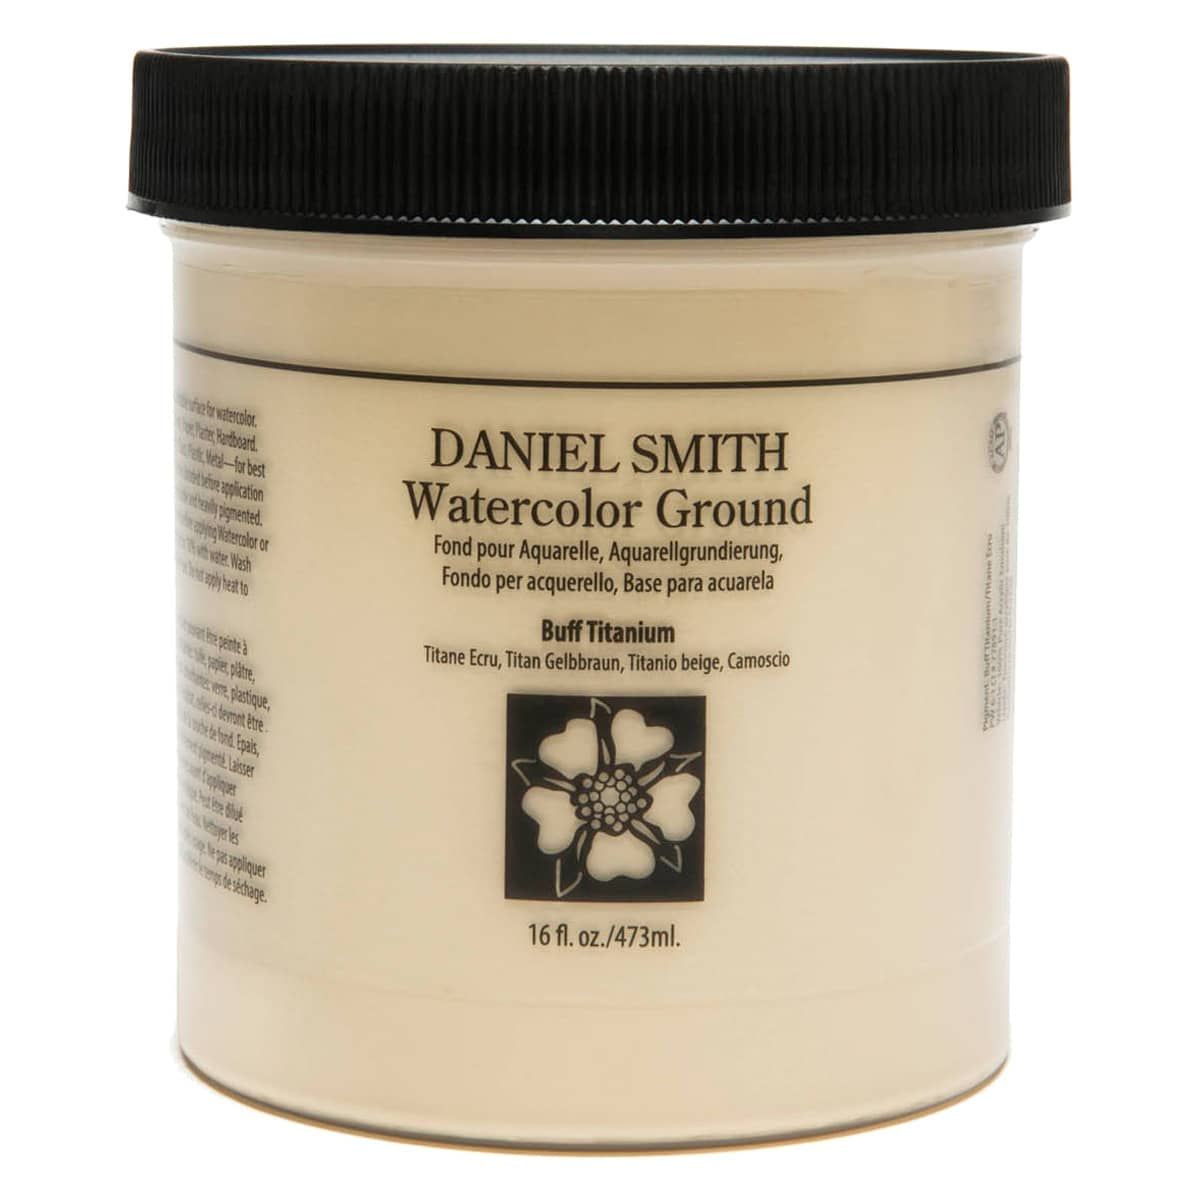 Daniel Smith Watercolor Ground - Buff Titanium, 16oz